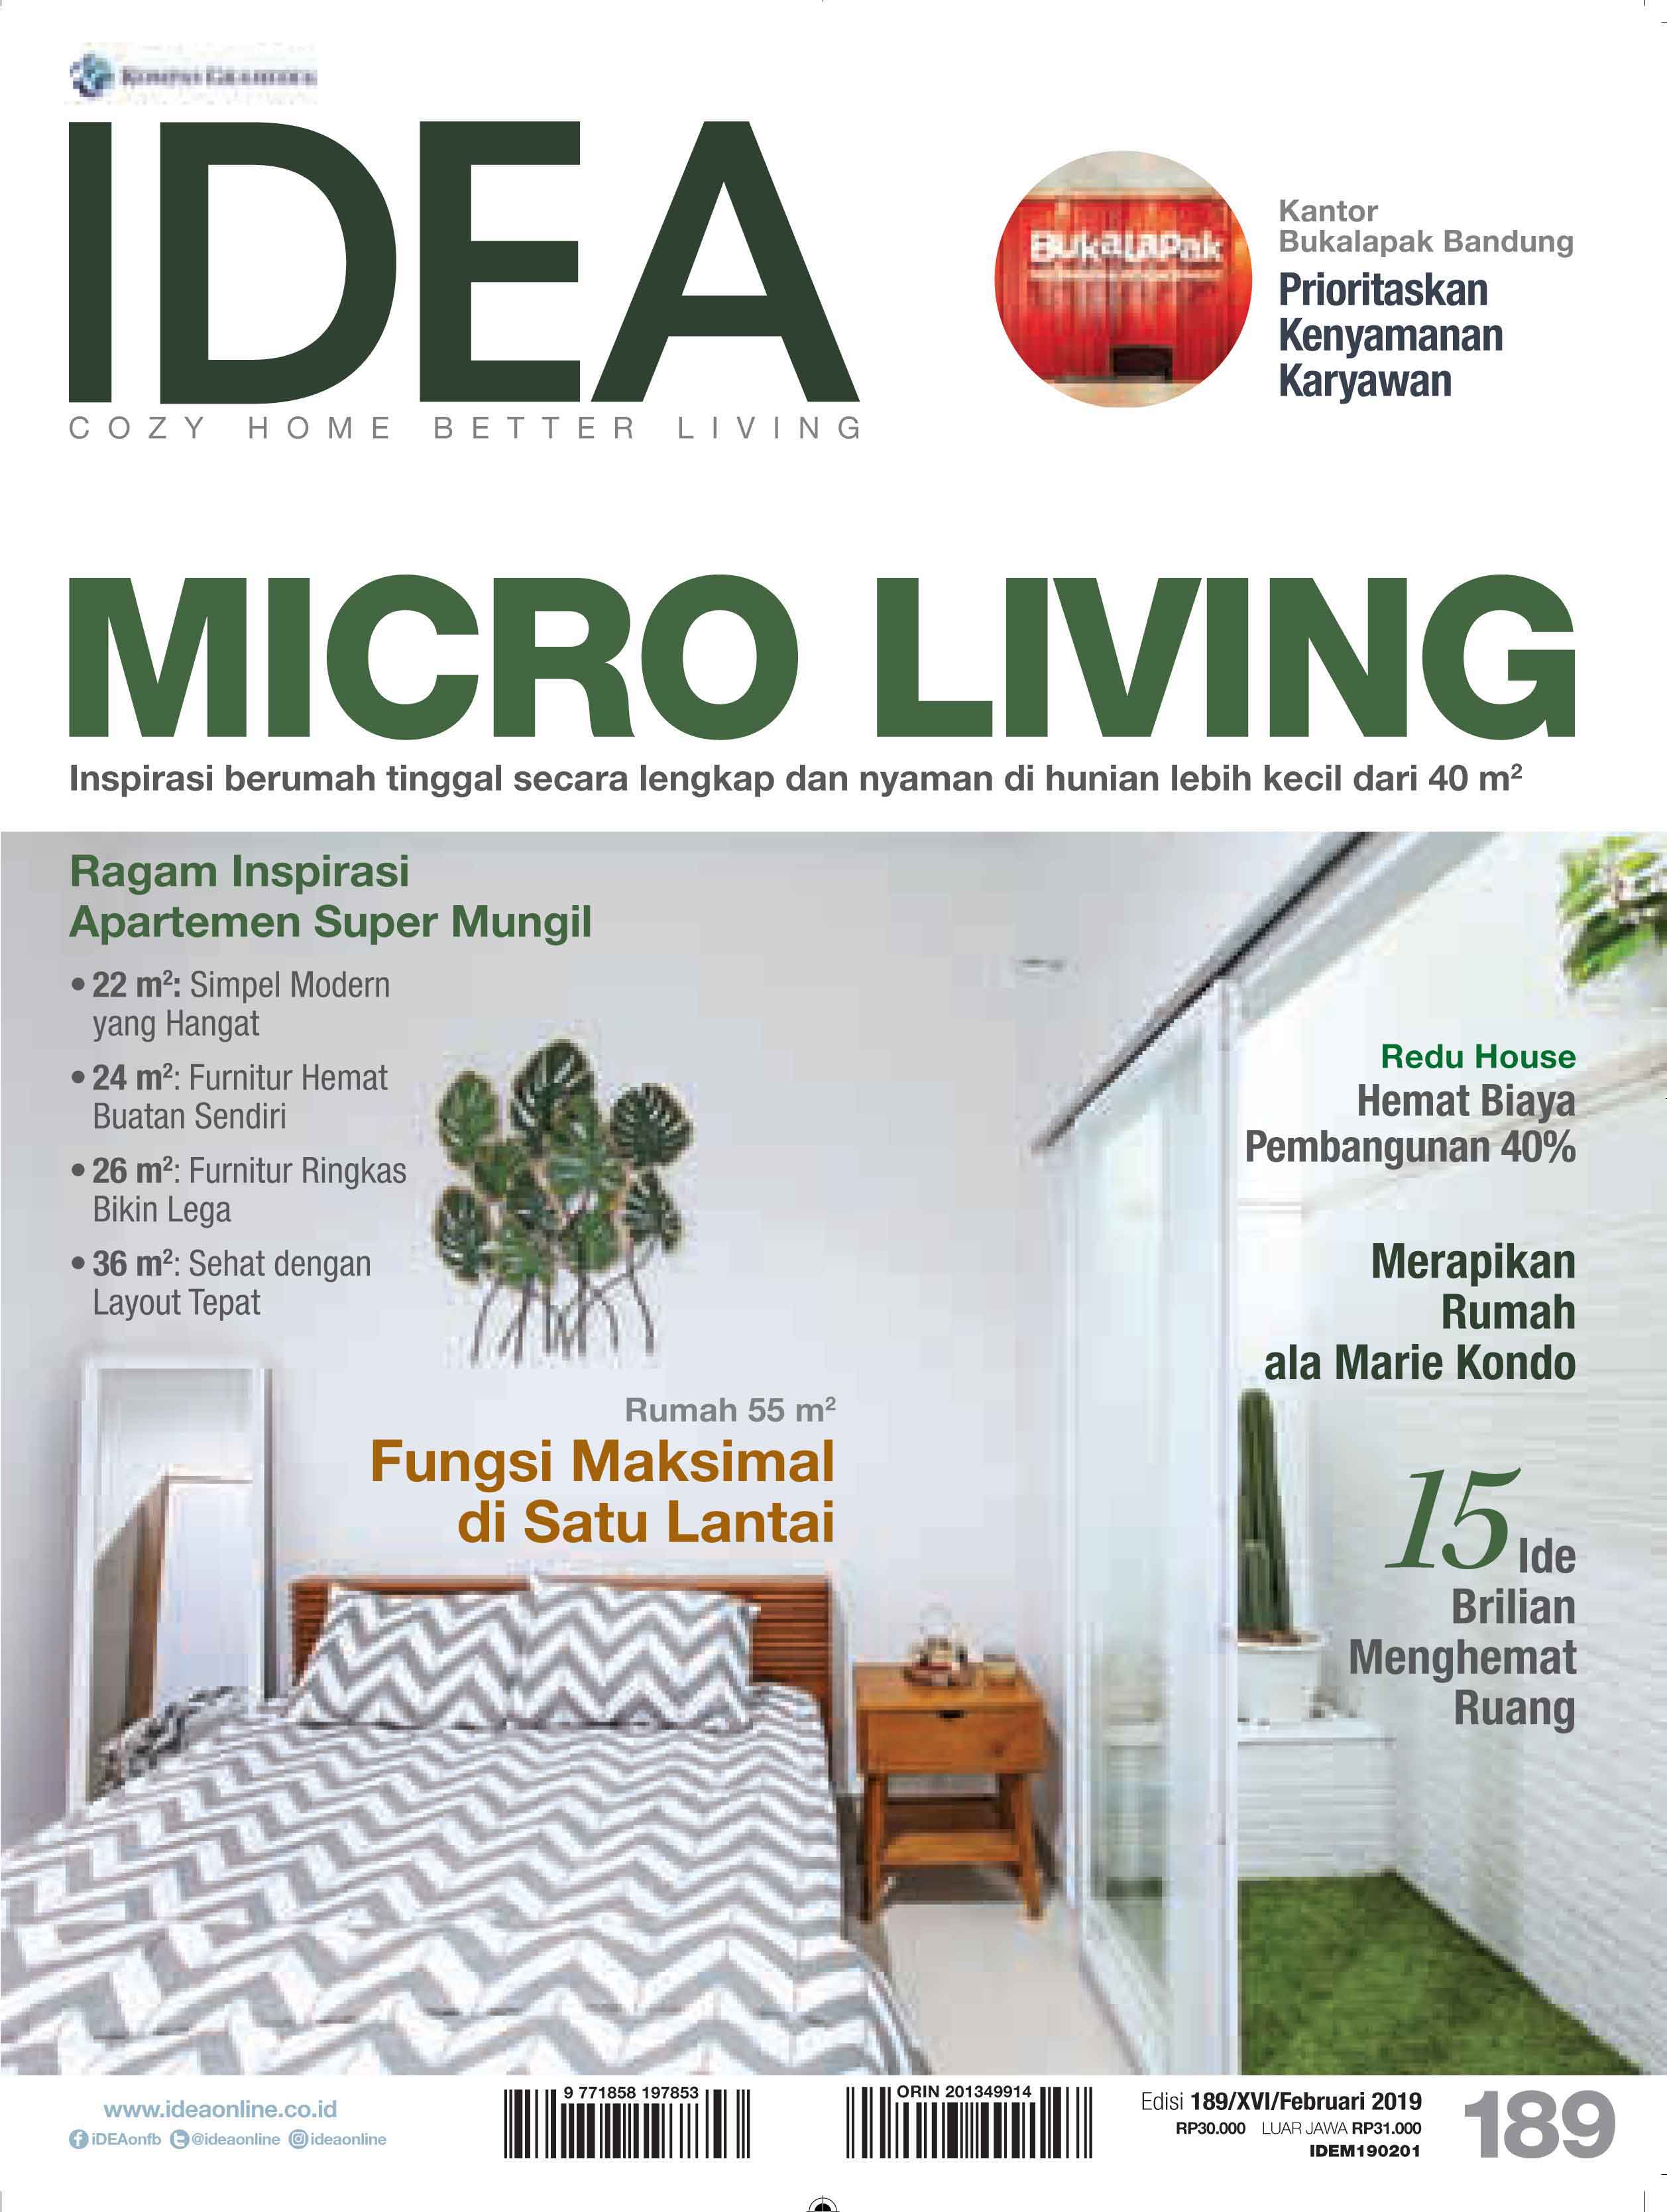 ARSITEKINTERIOR.COM dalam majalah IDEA Edisi 189 Februari 2019, karya dan narasumber MICRO LIVING